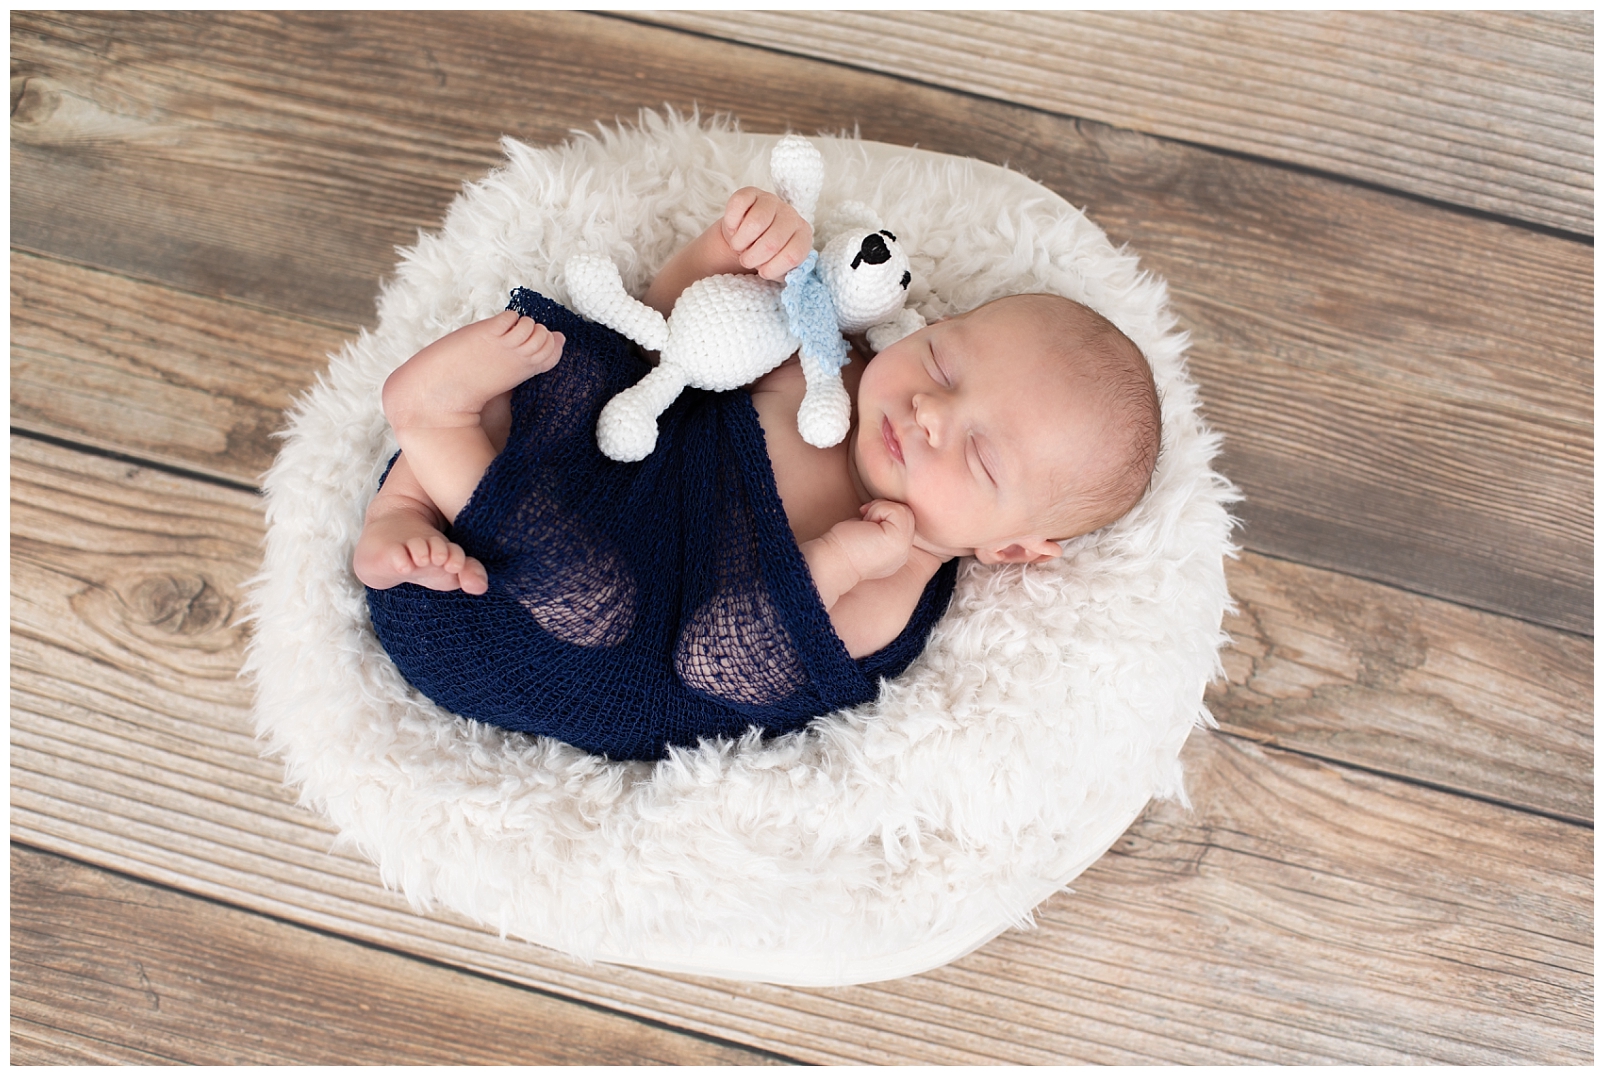 Newborn boy in blue wrap holding a teddy bear